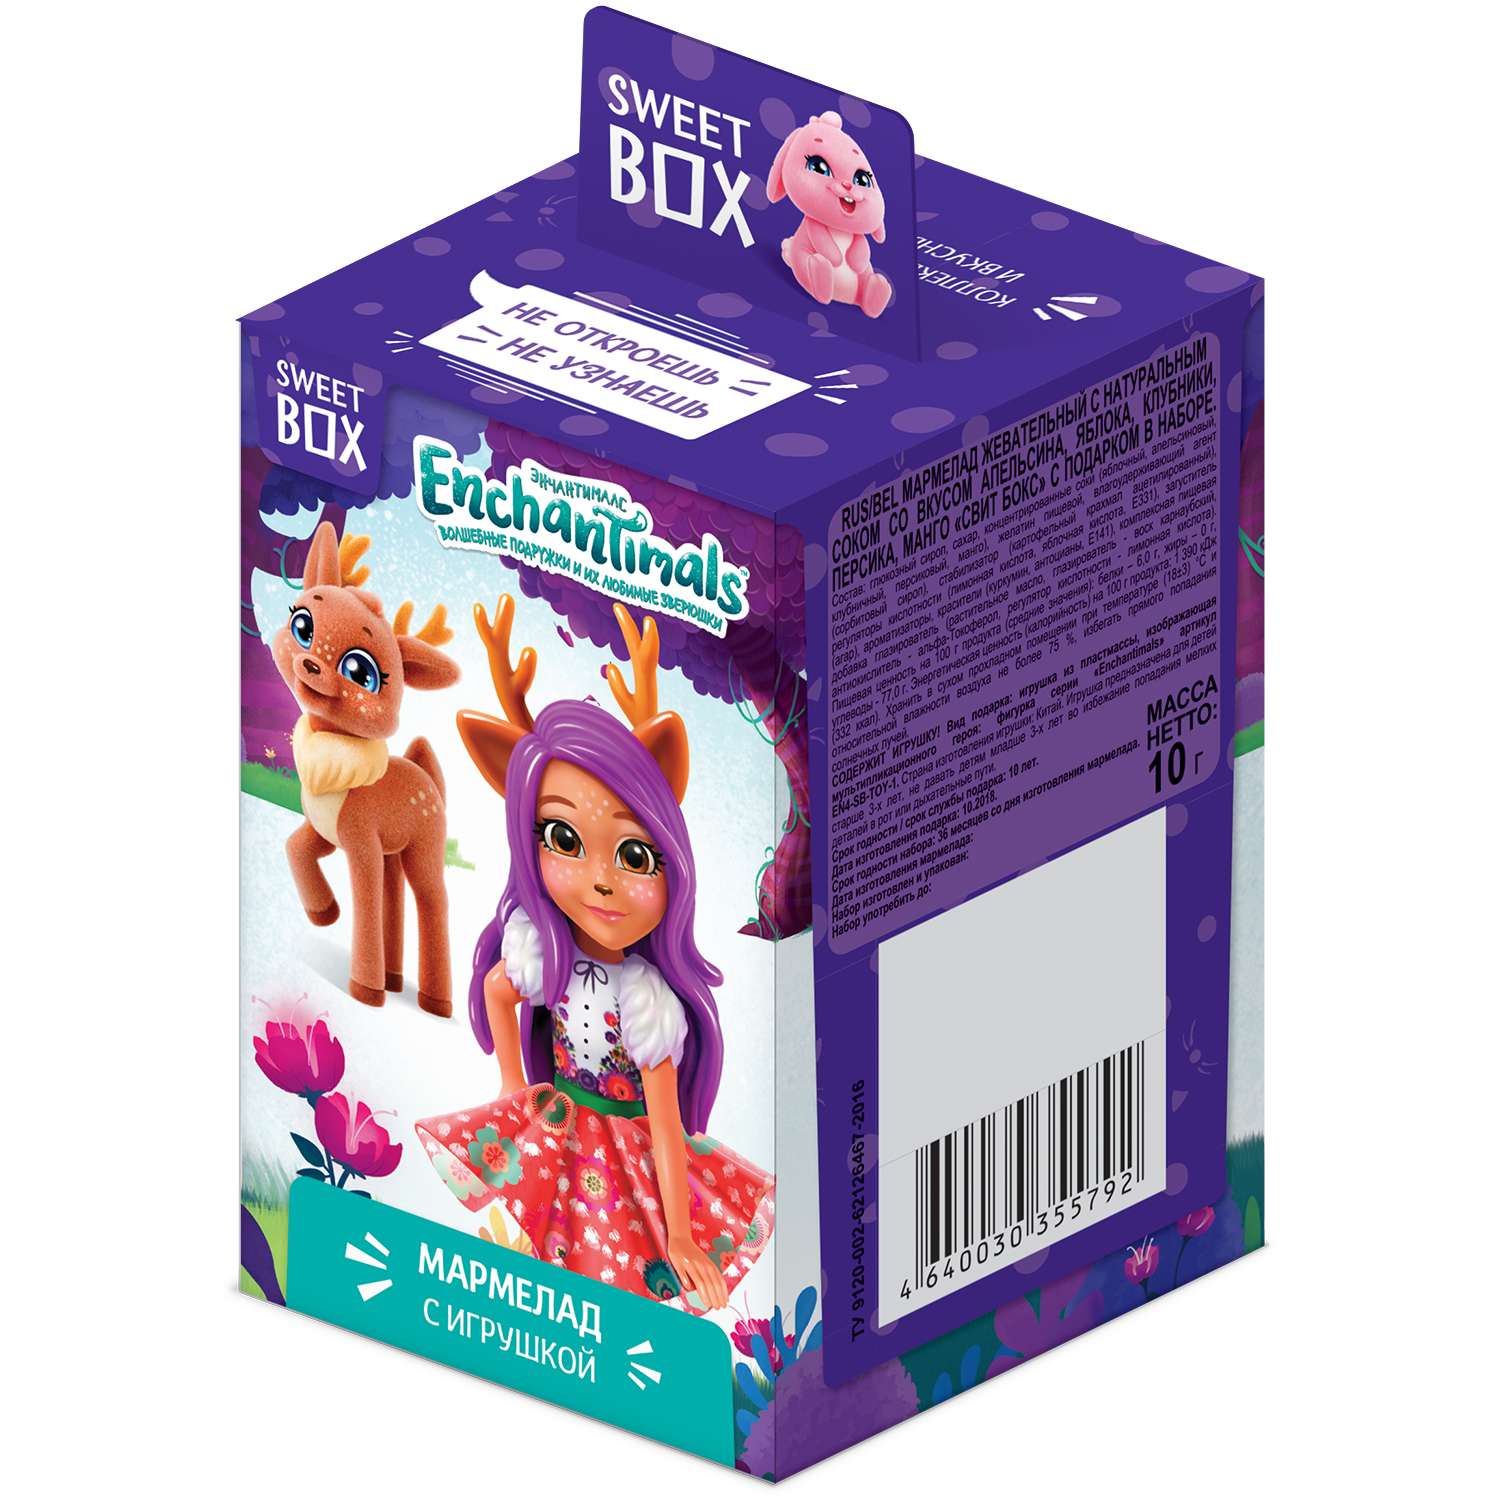 Мармелад Sweet box Enchantimals с игрушкой 10г в непрозрачной упаковке (Сюрприз) - фото 2